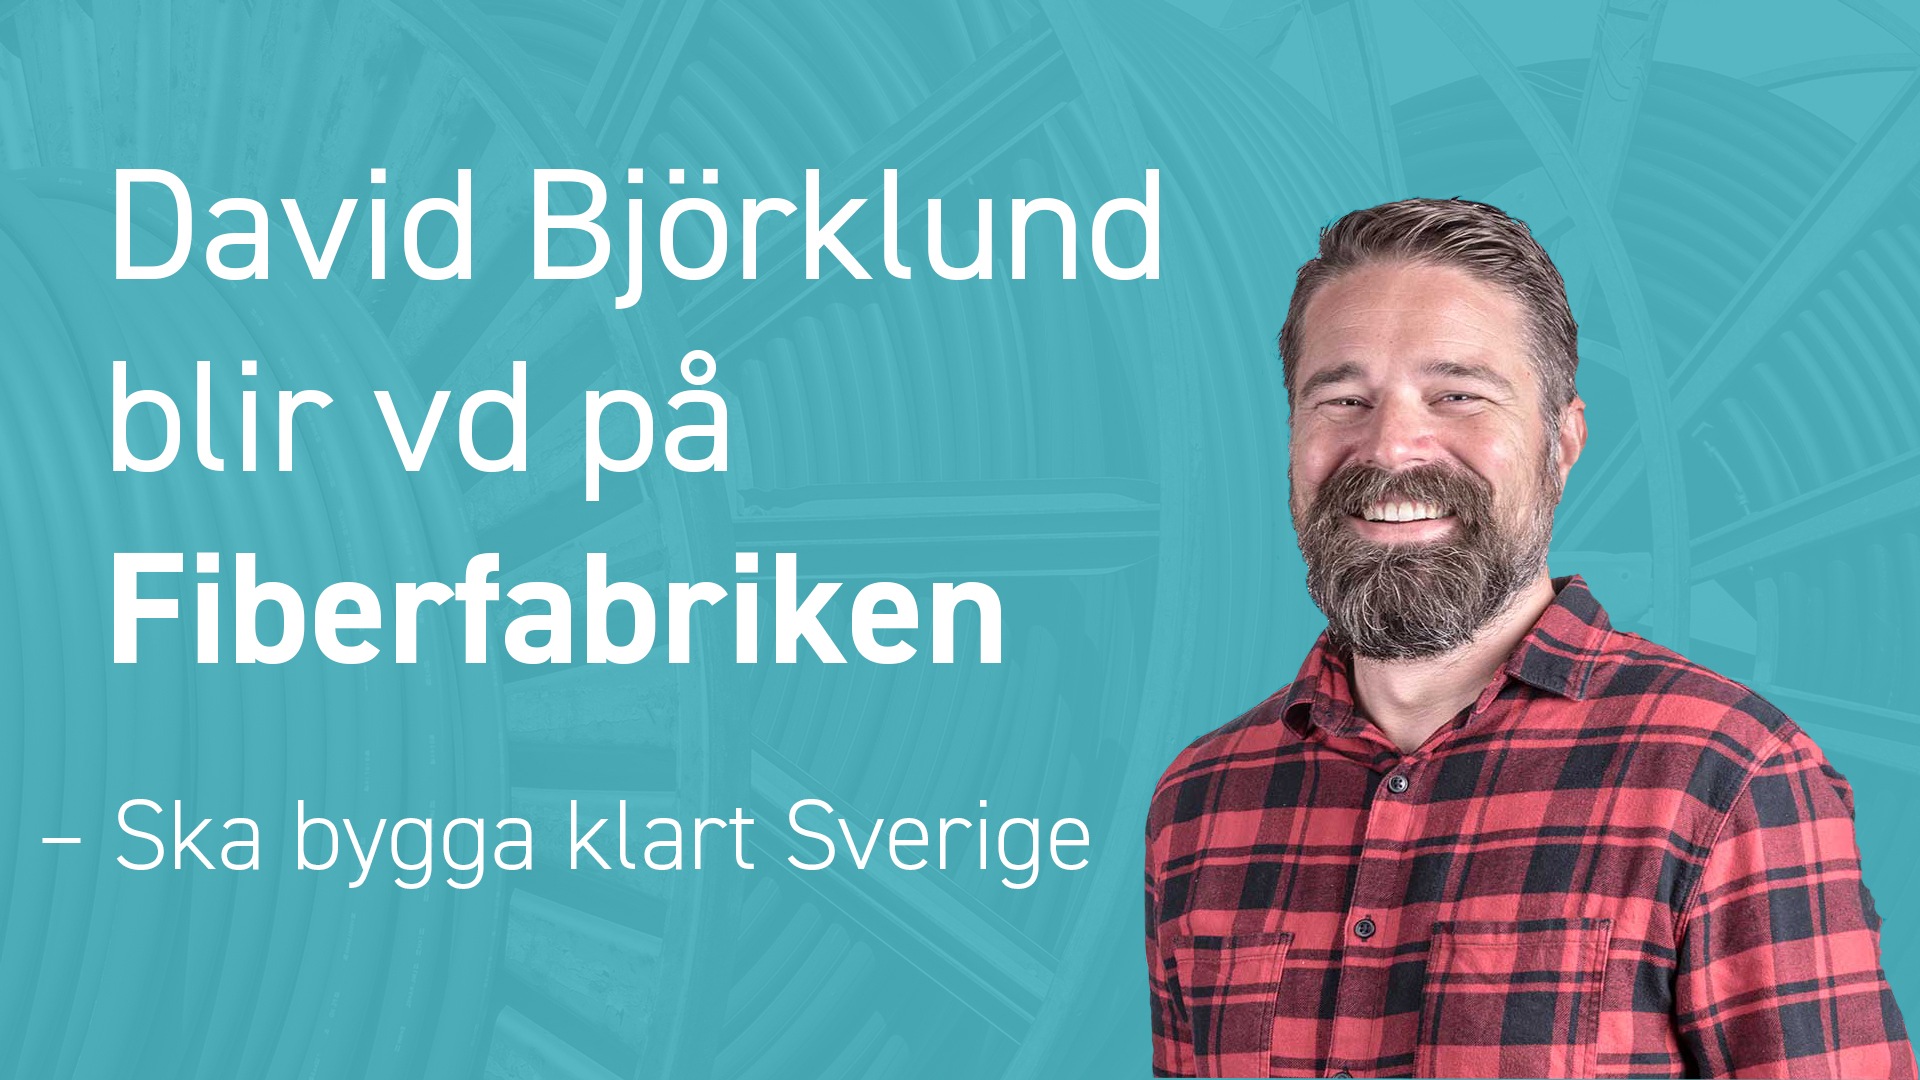 David Björklund blir vd på Fiberfabriken - Ska bygga klart Sverige